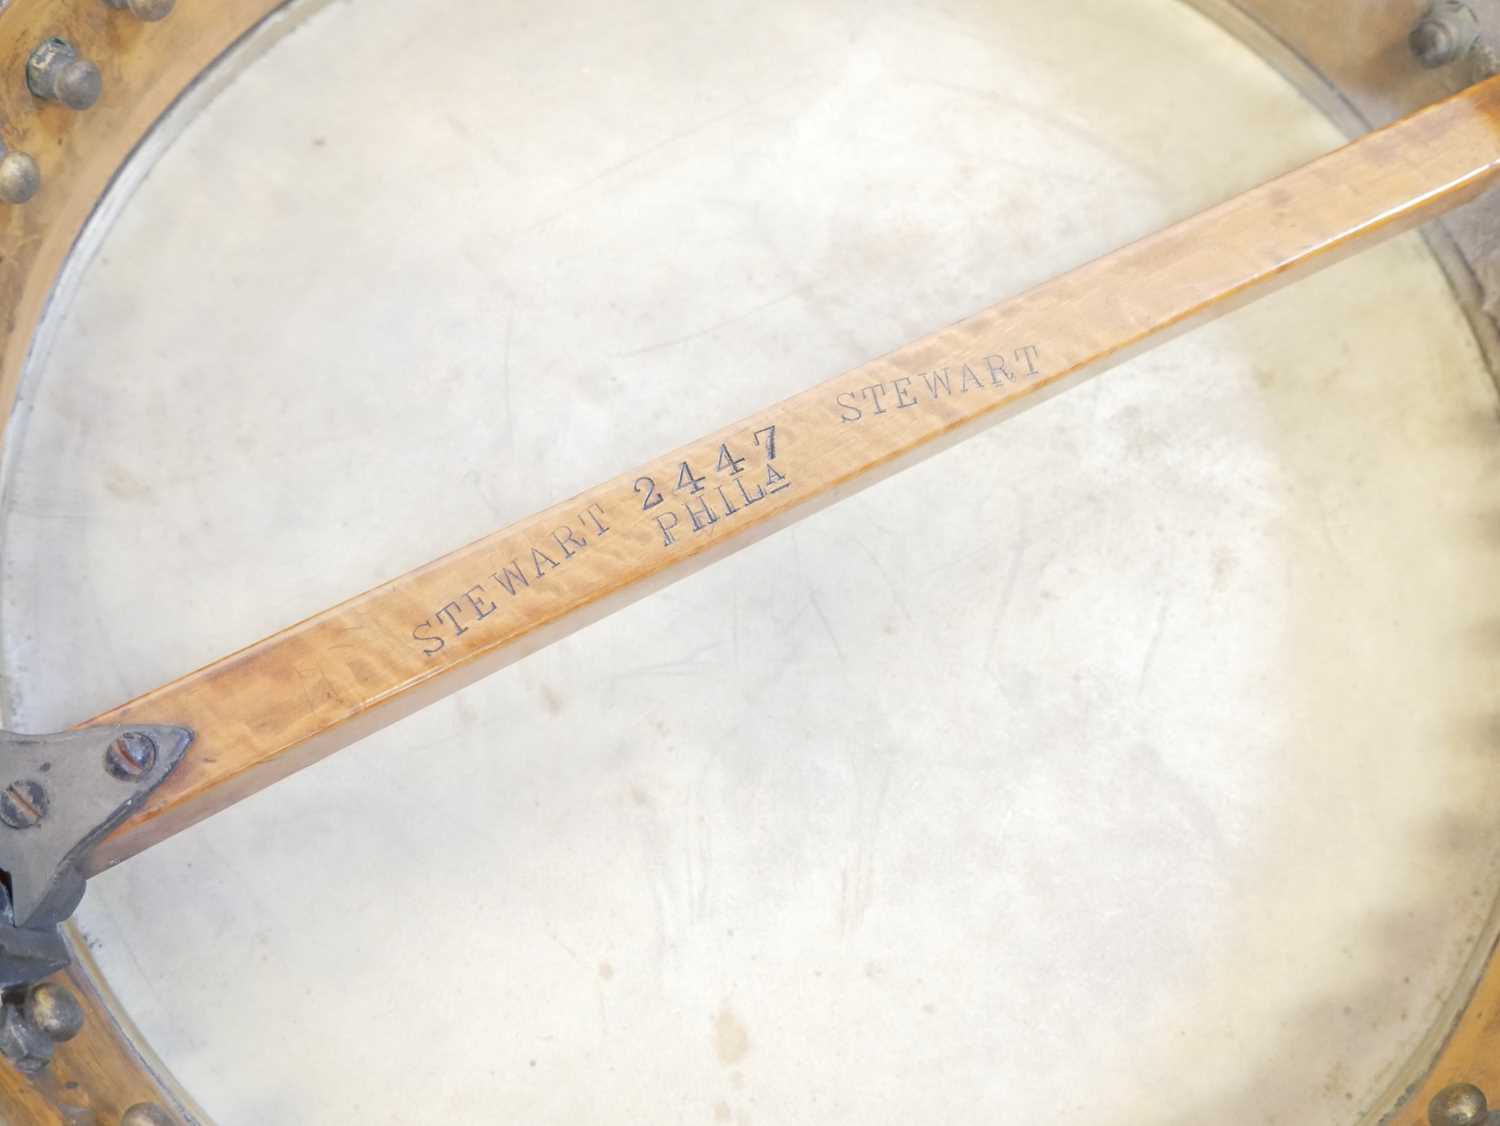 Stewart five string banjo - Image 10 of 16